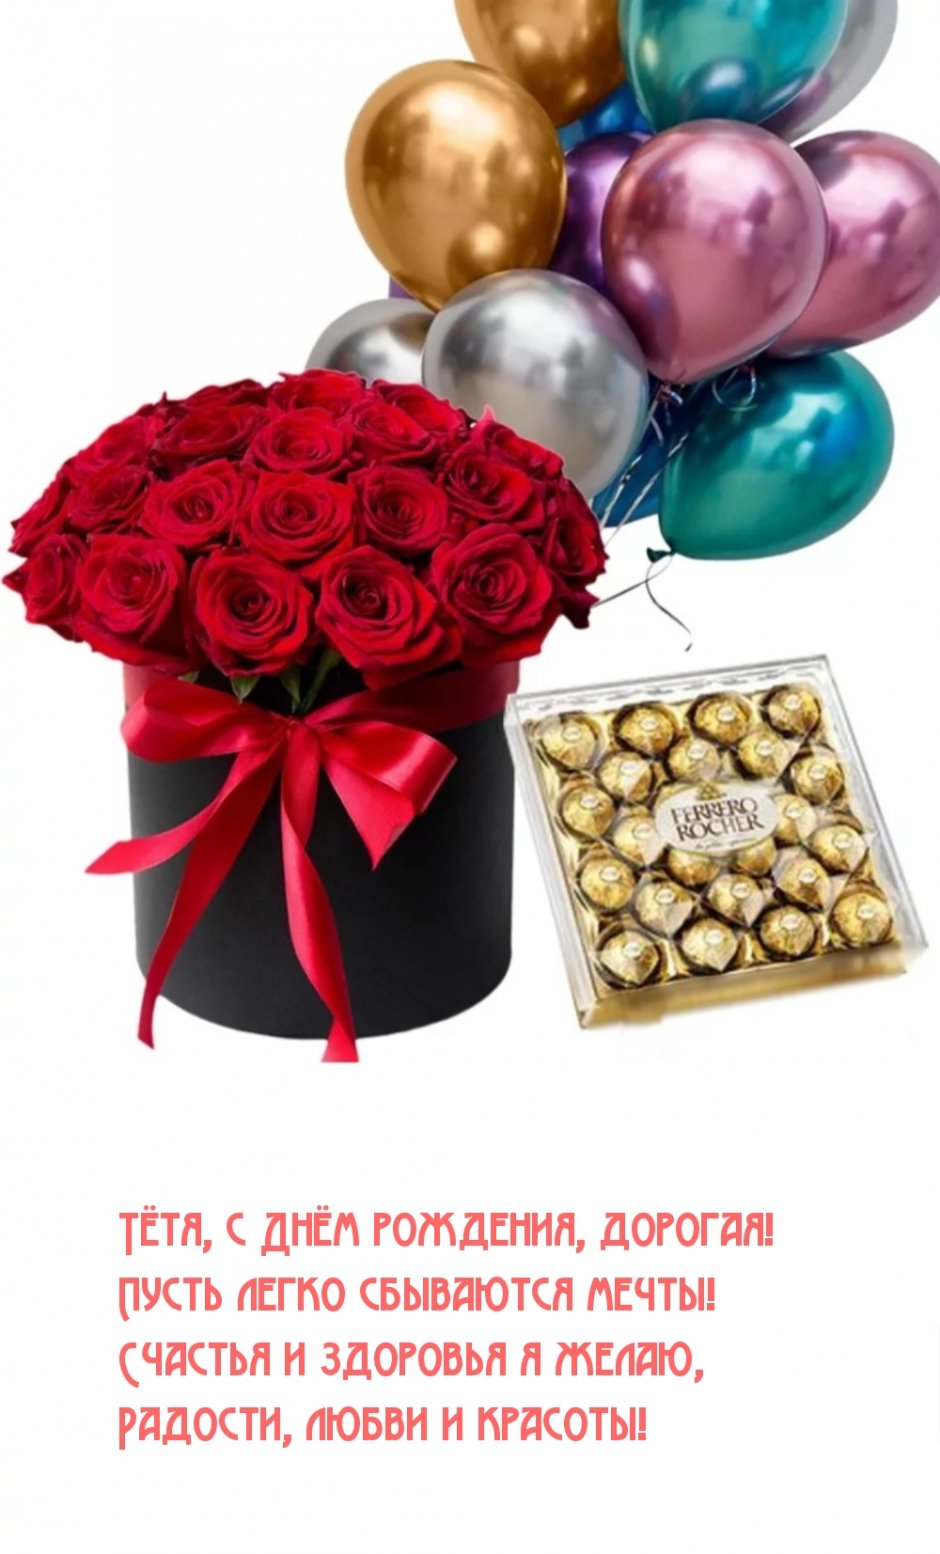 Подарок цветы и конфеты